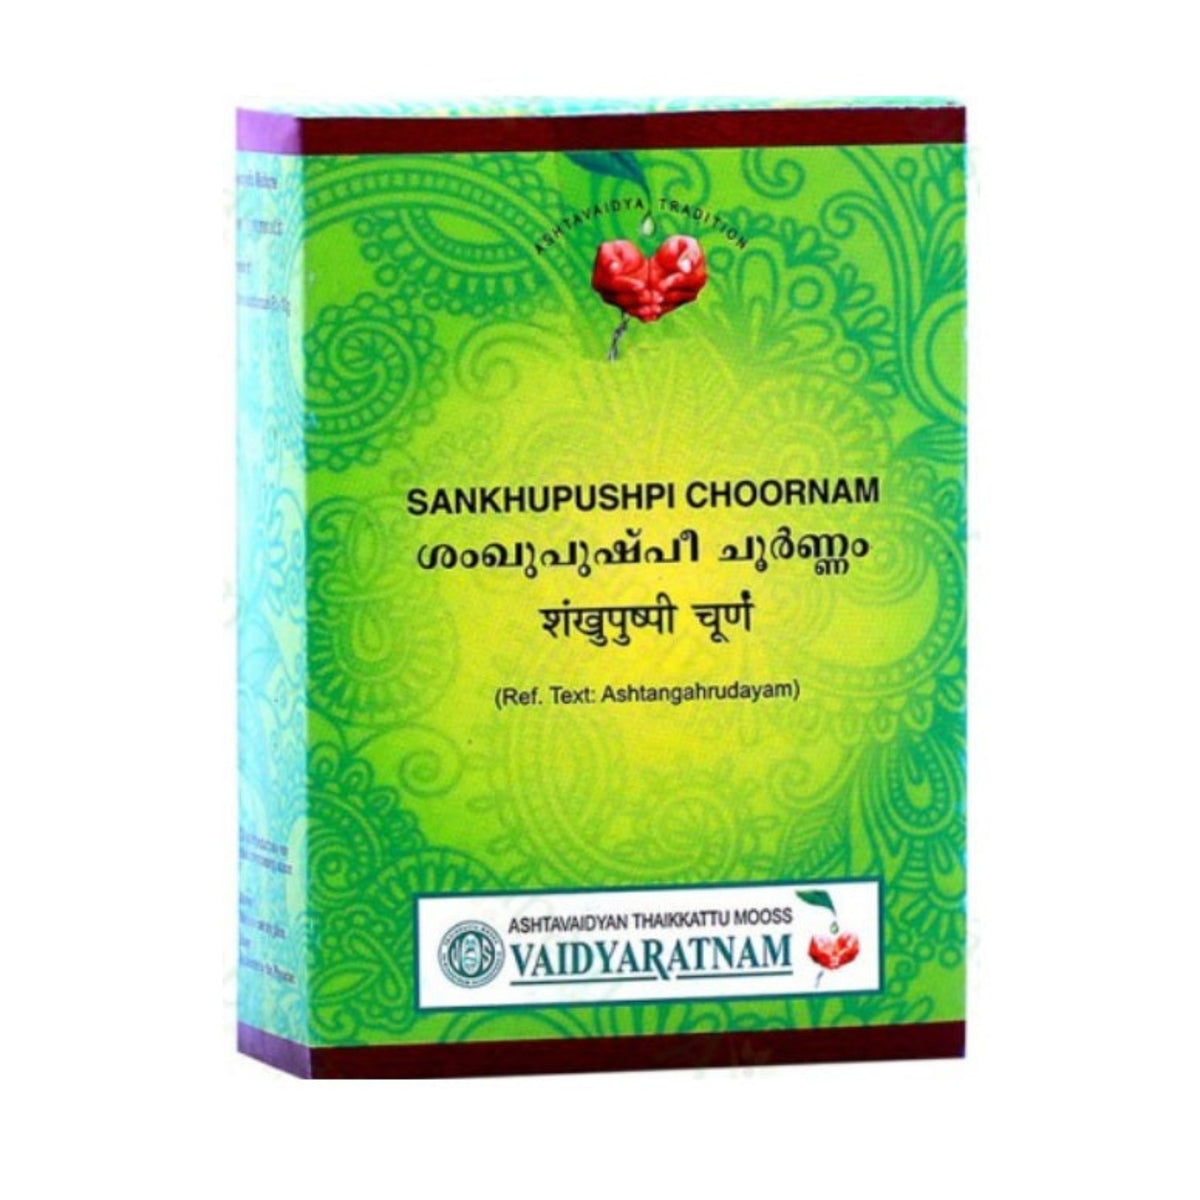 Vaidyaratnam Ayurvedic Sankhupushpi Choornam Powder 100g